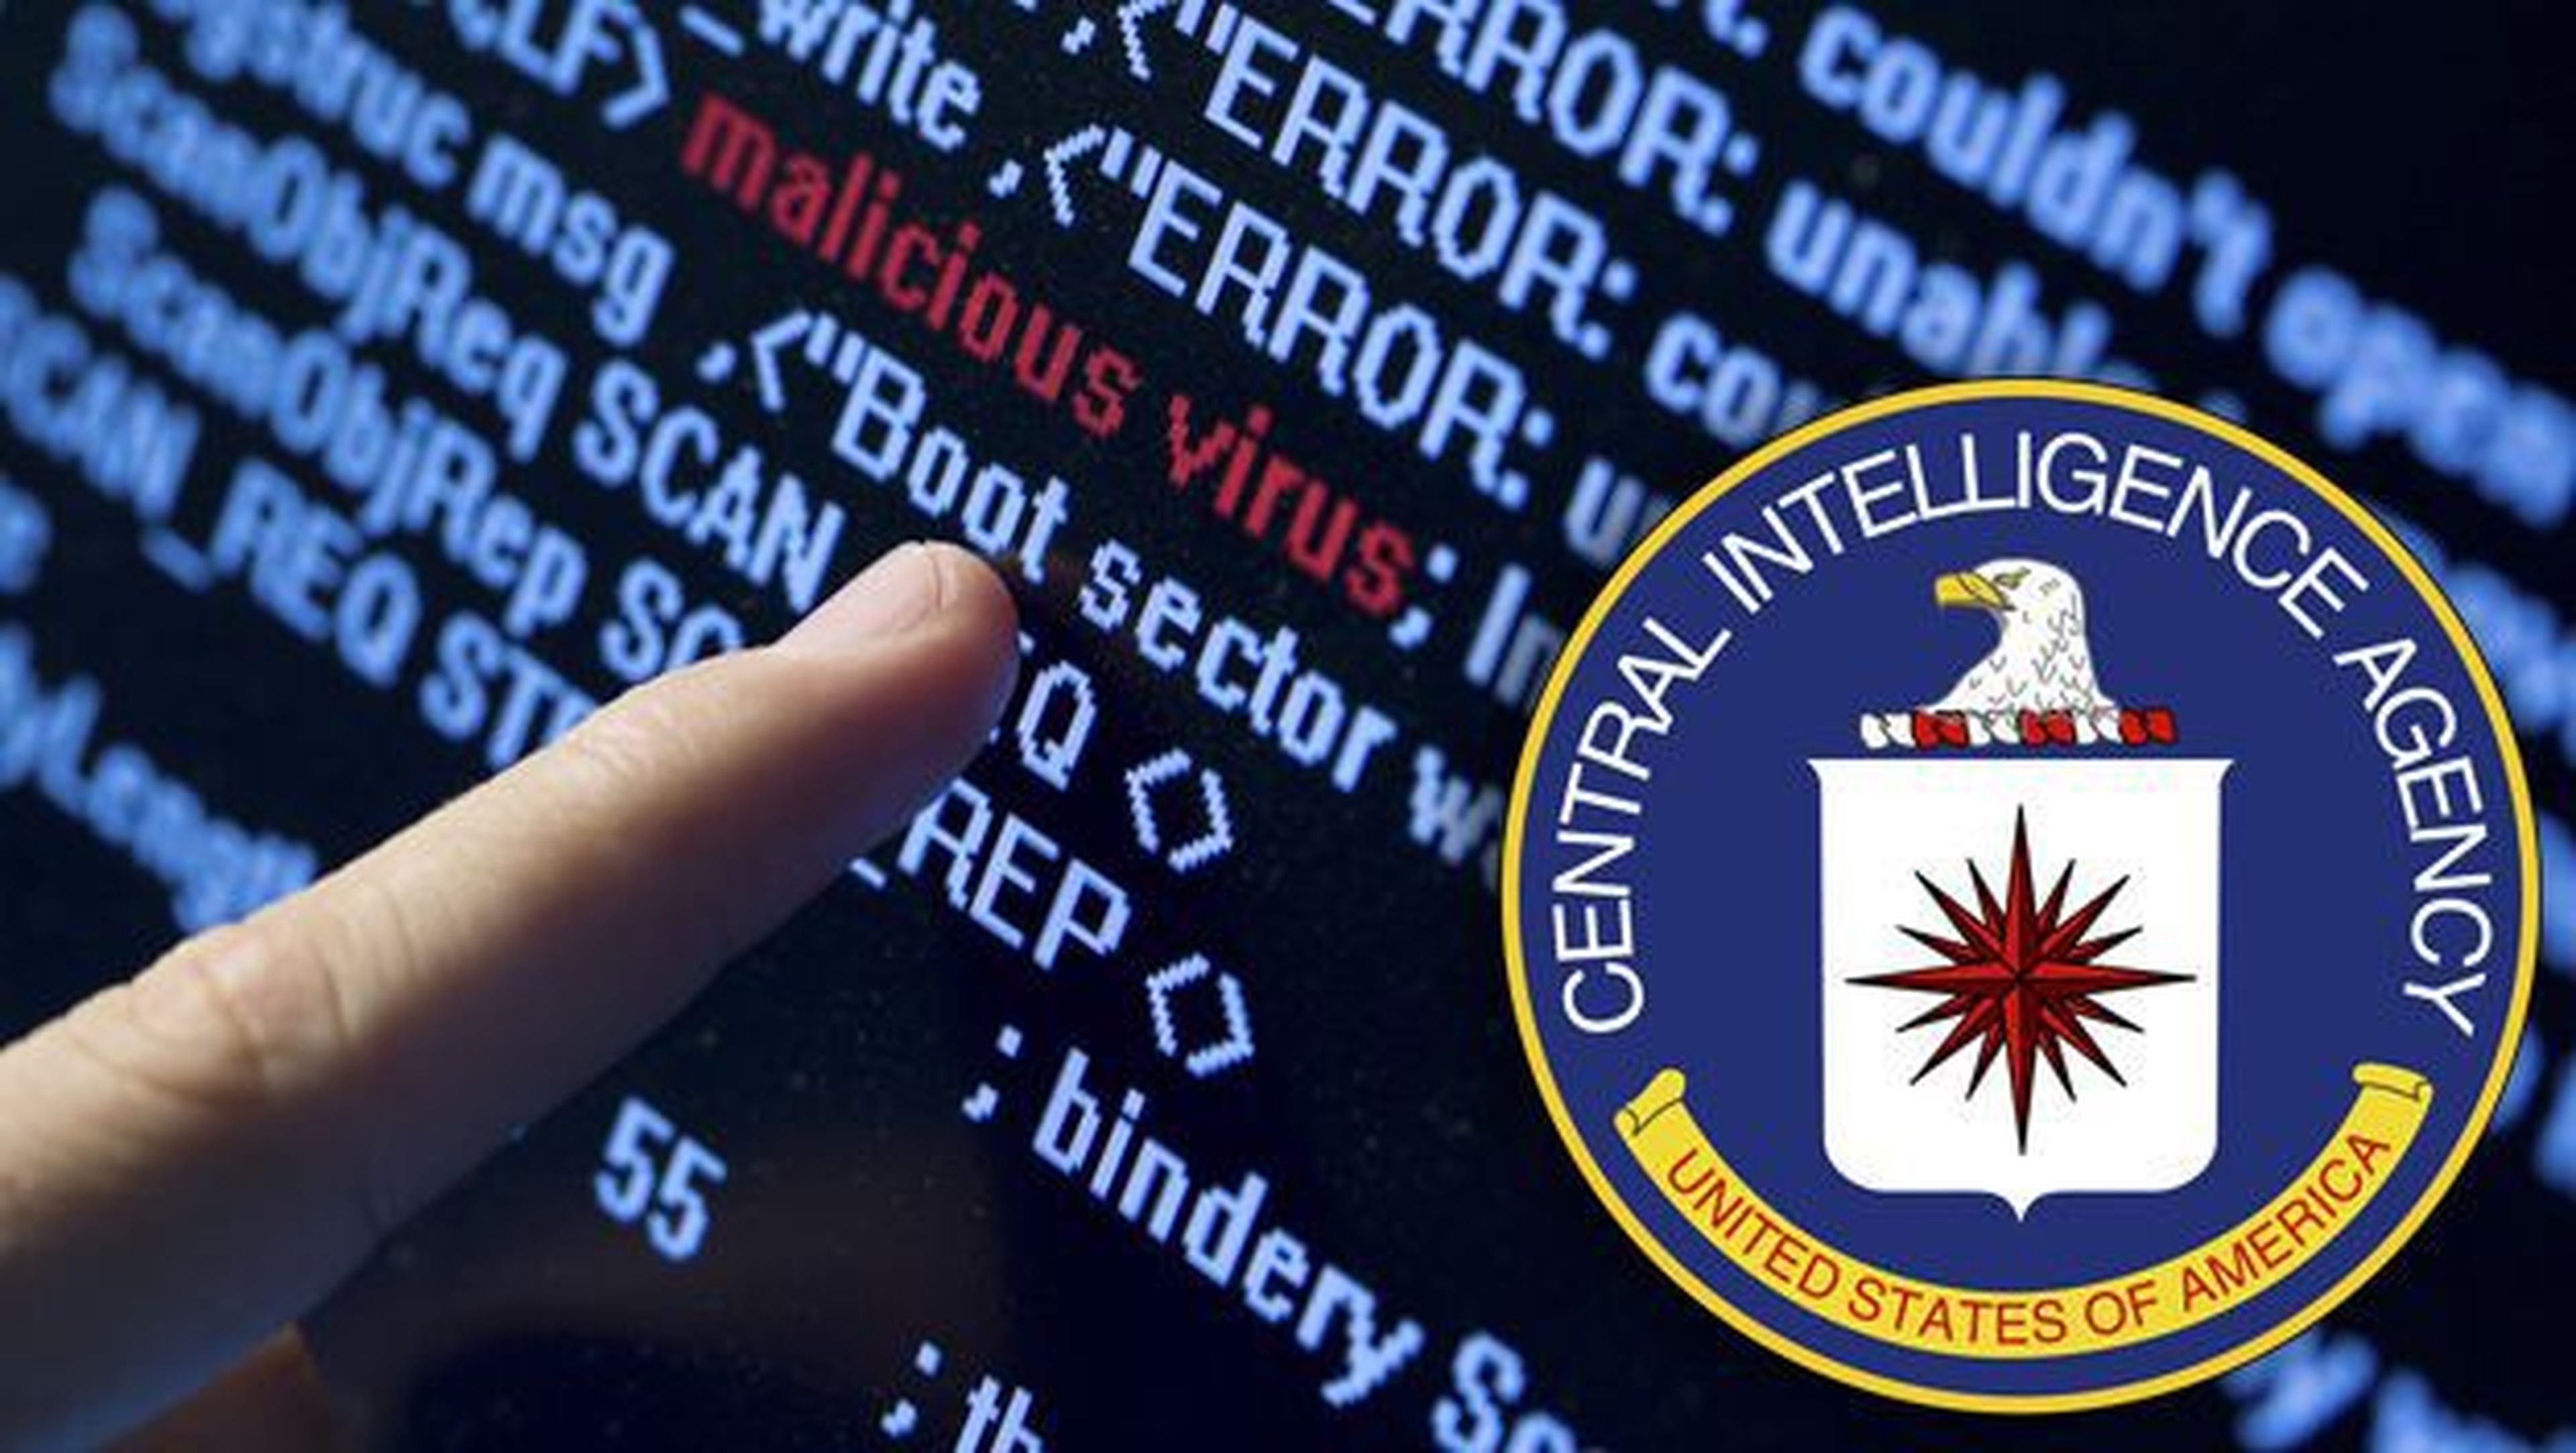 wikileaks hackear televisor samsung